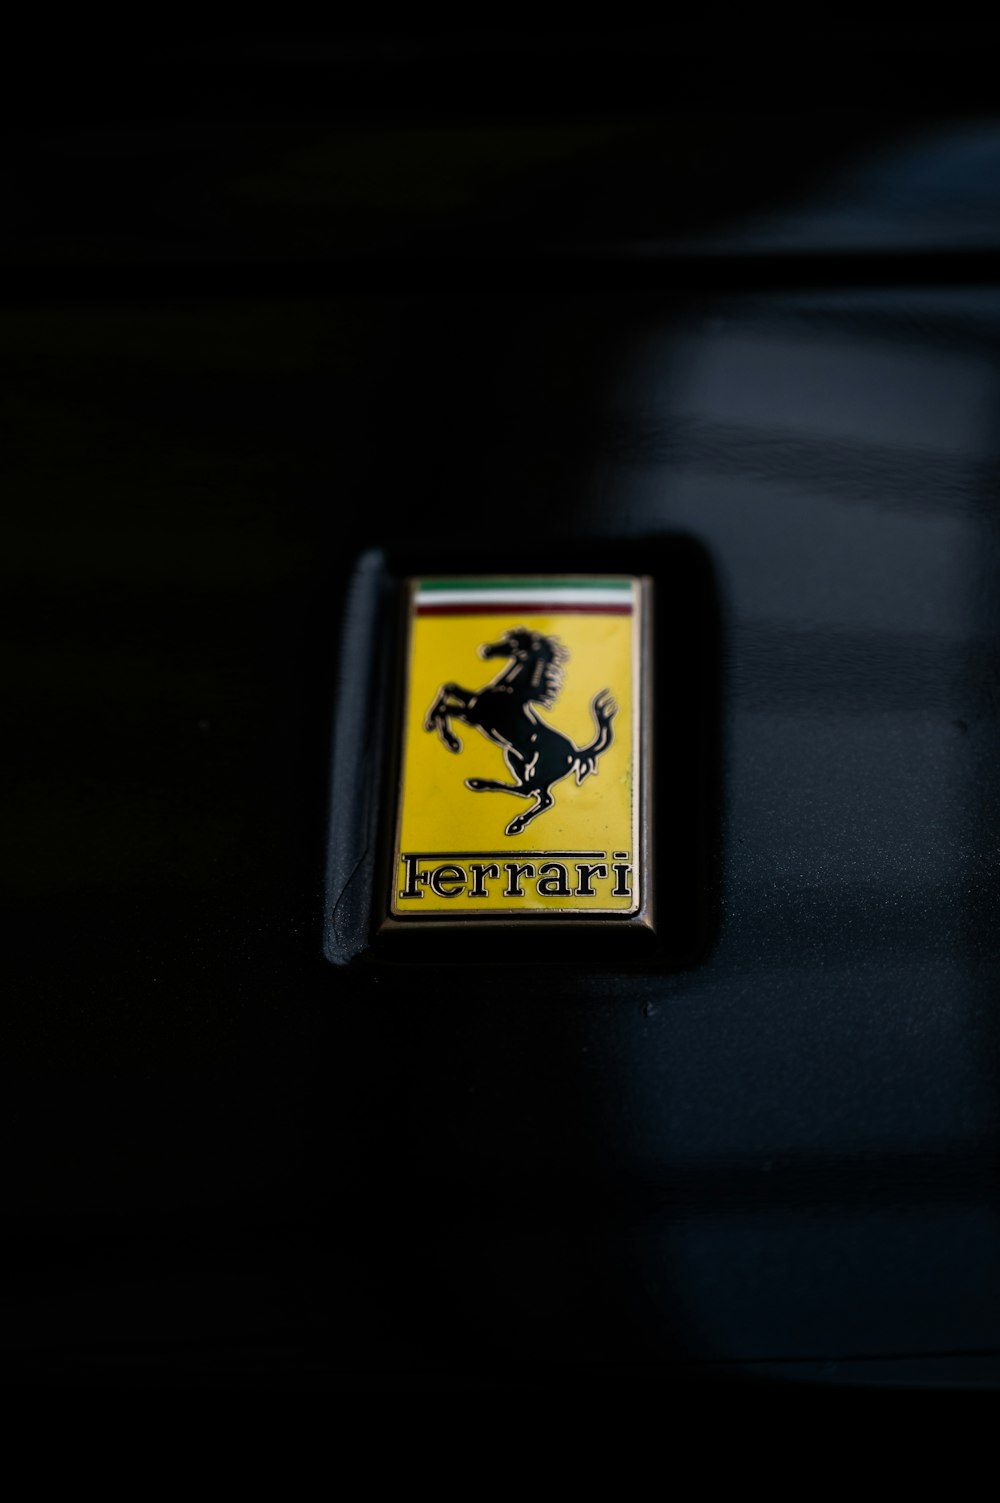 a close up of a ferrari emblem on a car